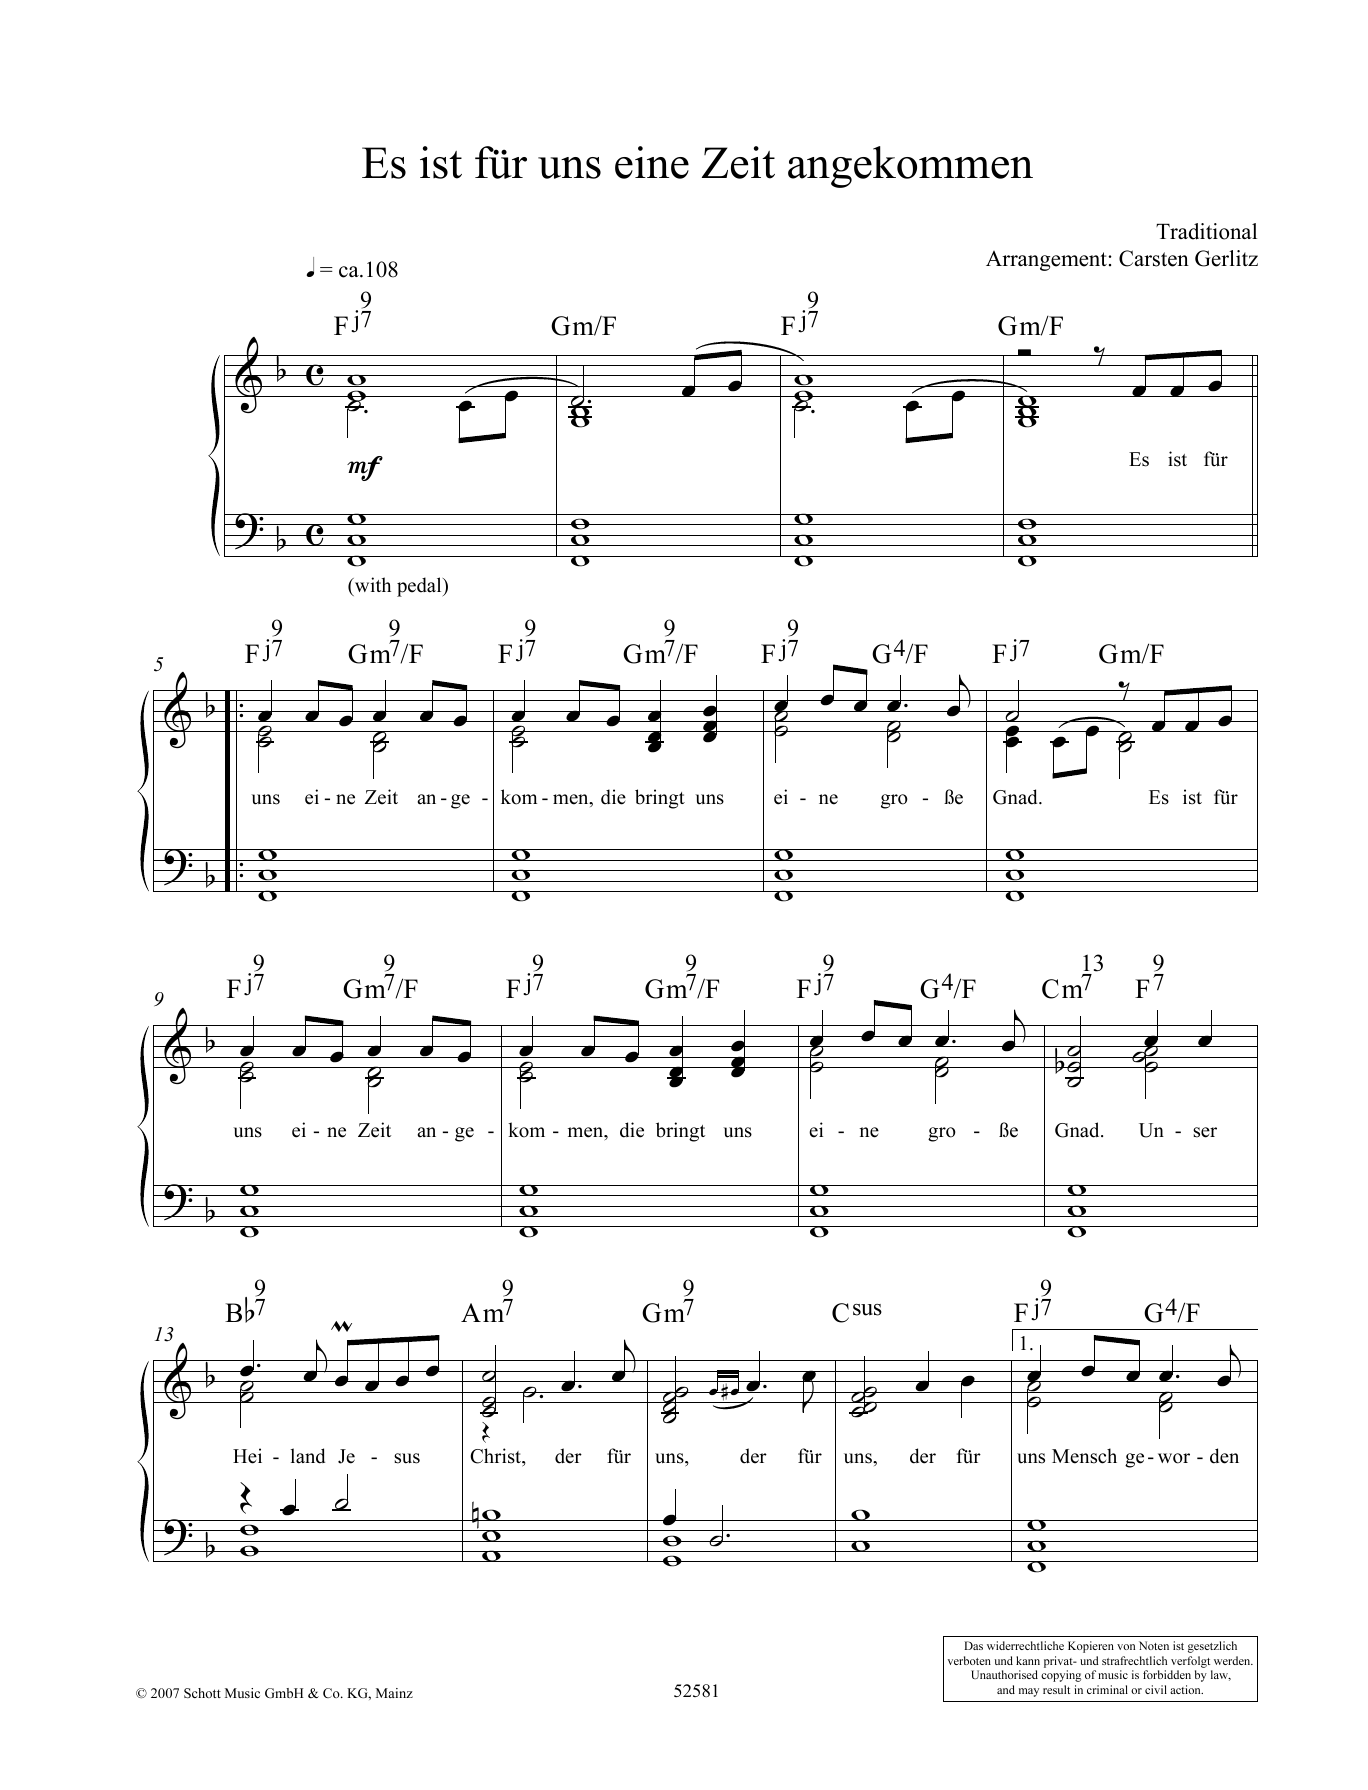 Carsten Gerlitz Es ist fur uns eine Zeit angekommen Sheet Music Notes & Chords for Piano Solo - Download or Print PDF